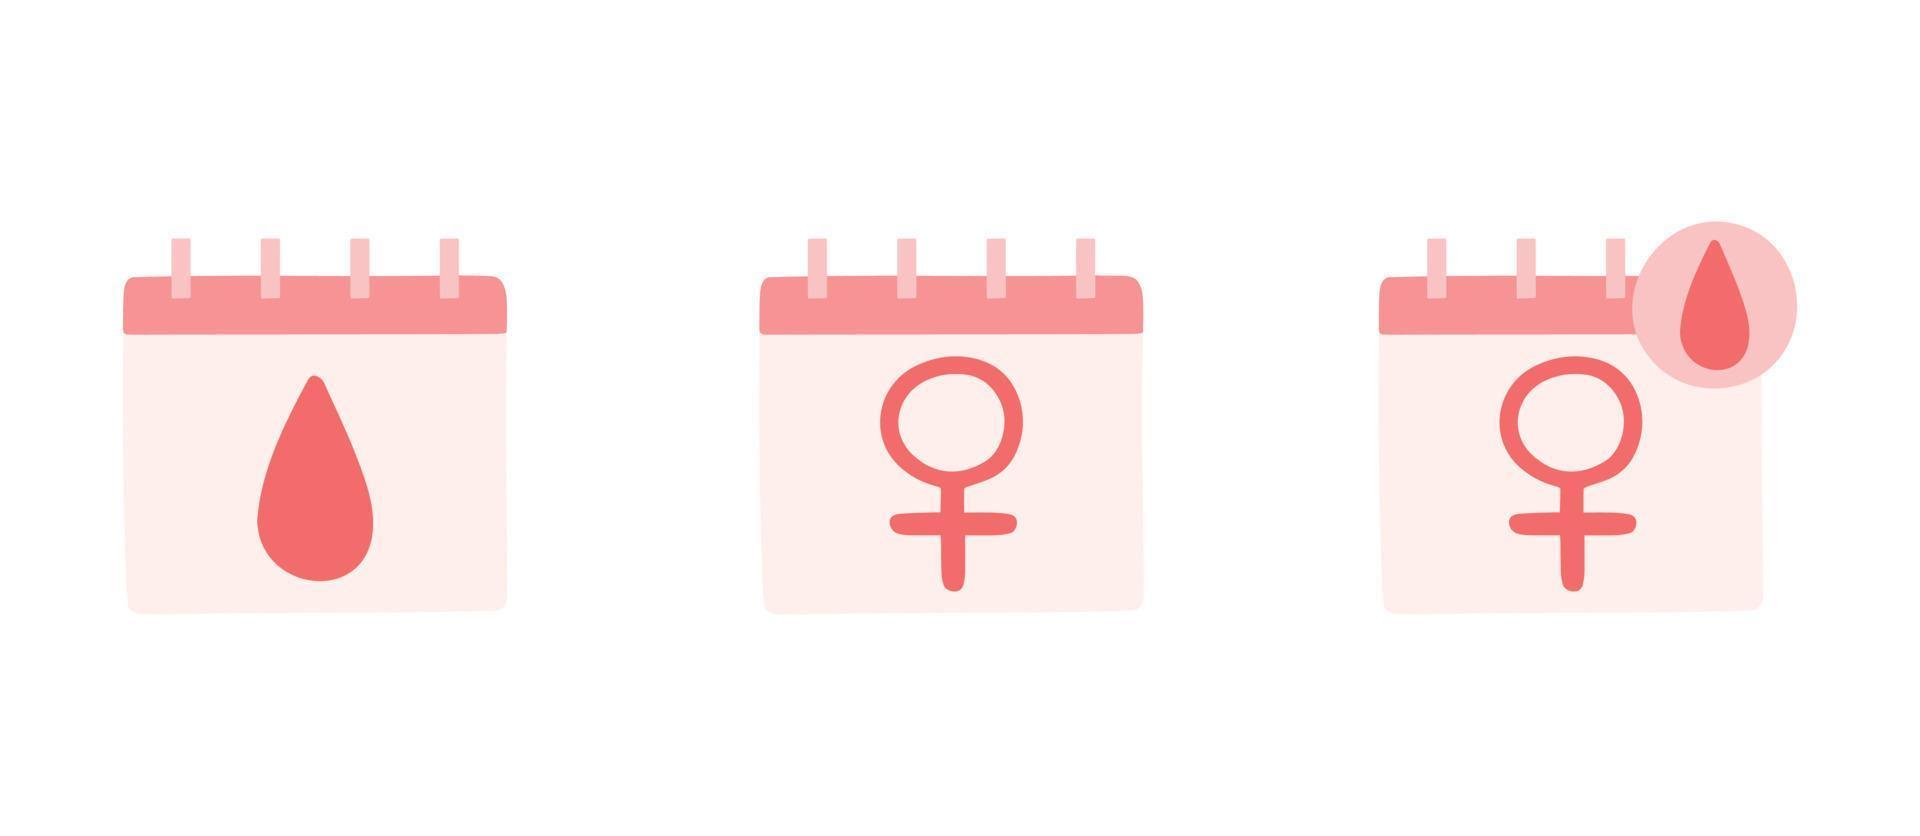 vrouw periode kalenders. vrouwelijk menstruatie- zorg illustratie.menstrual periode.feminisme.gender gelijkwaardigheid. vector